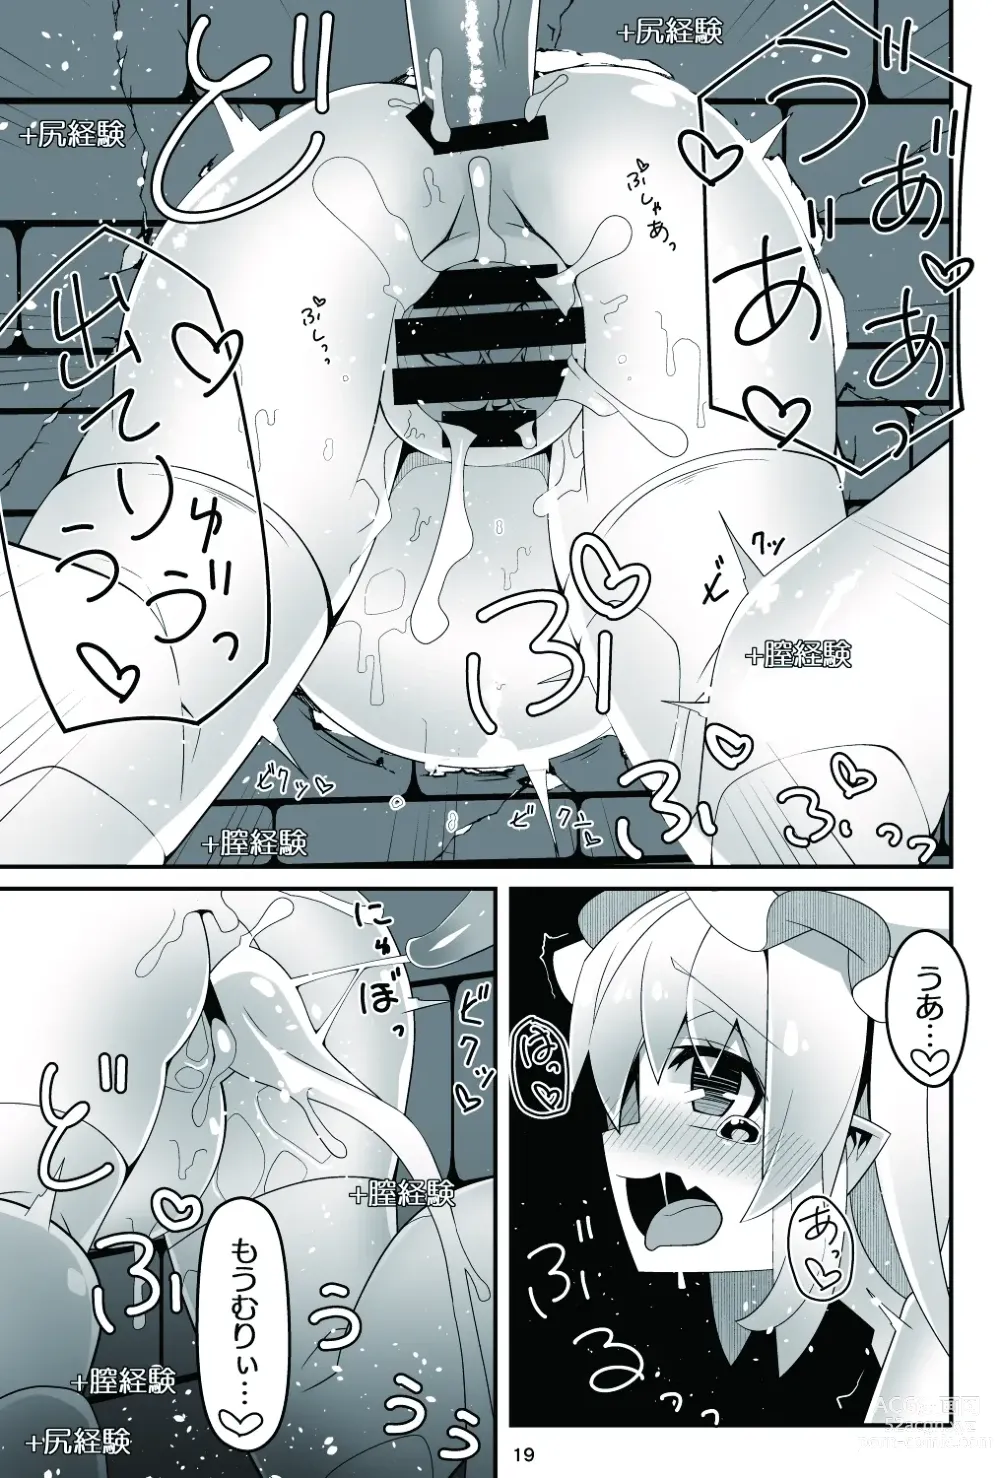 Page 20 of doujinshi Flan-chan no Ero Trap Dungeon No Sensory Pitfall Kankaku Shadan Otoshiana & Kabeshiri Trap Hen